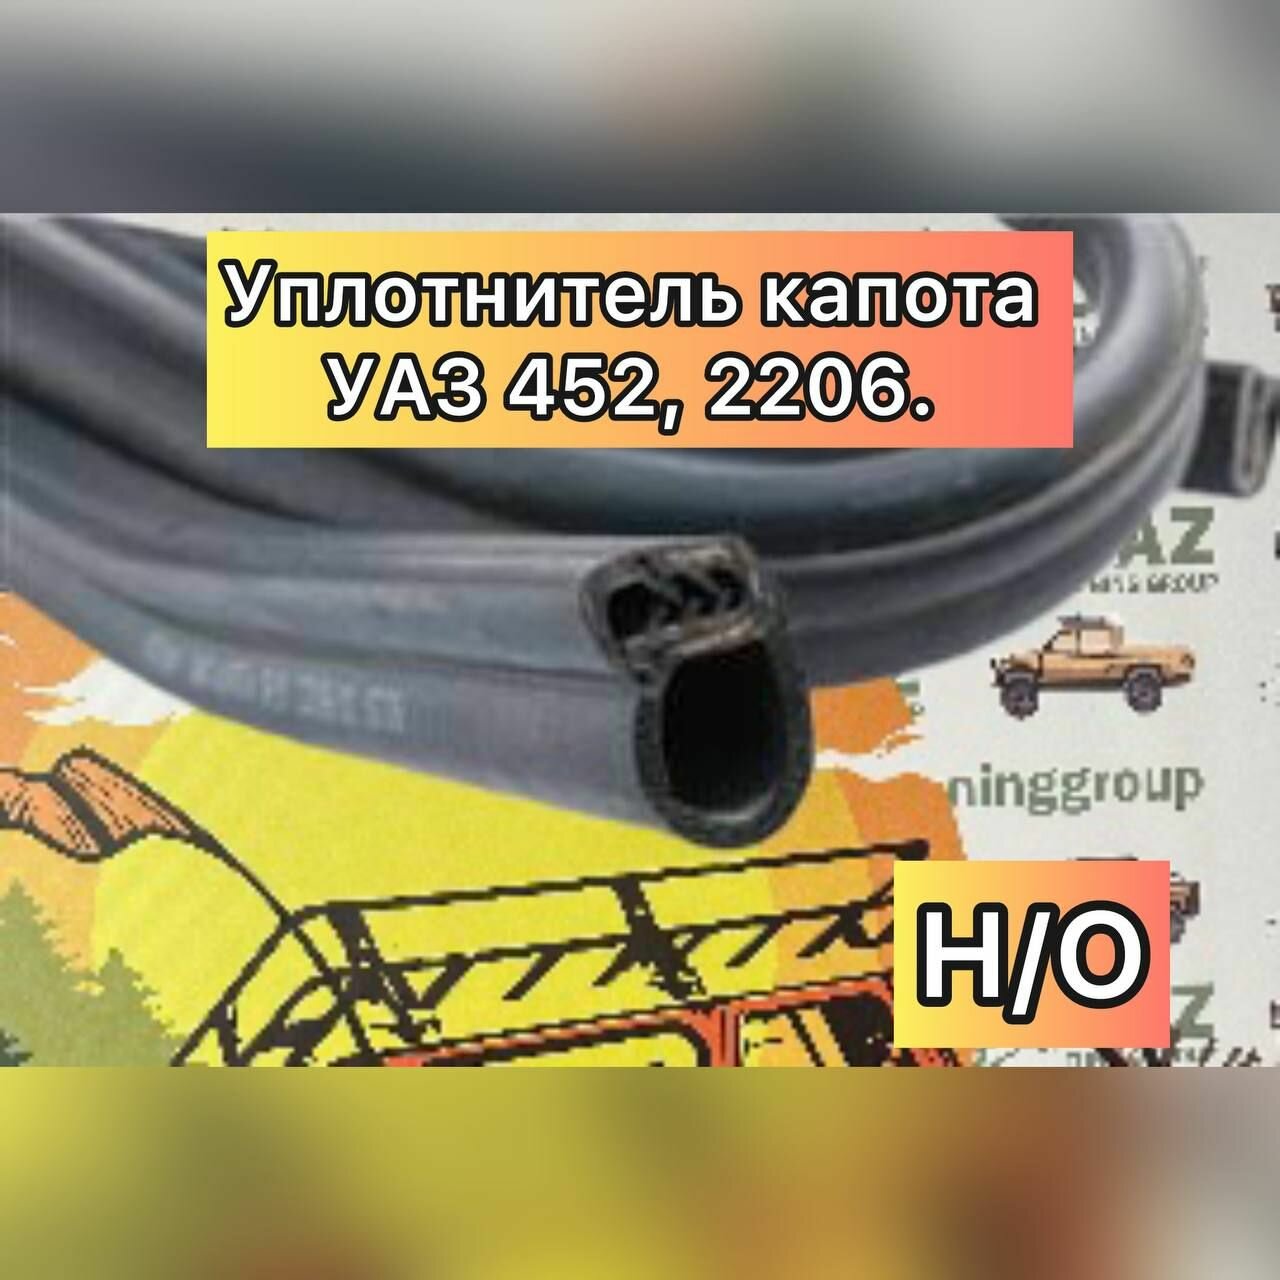 Уплотнитель капота УАЗ 452, 2206 н/о